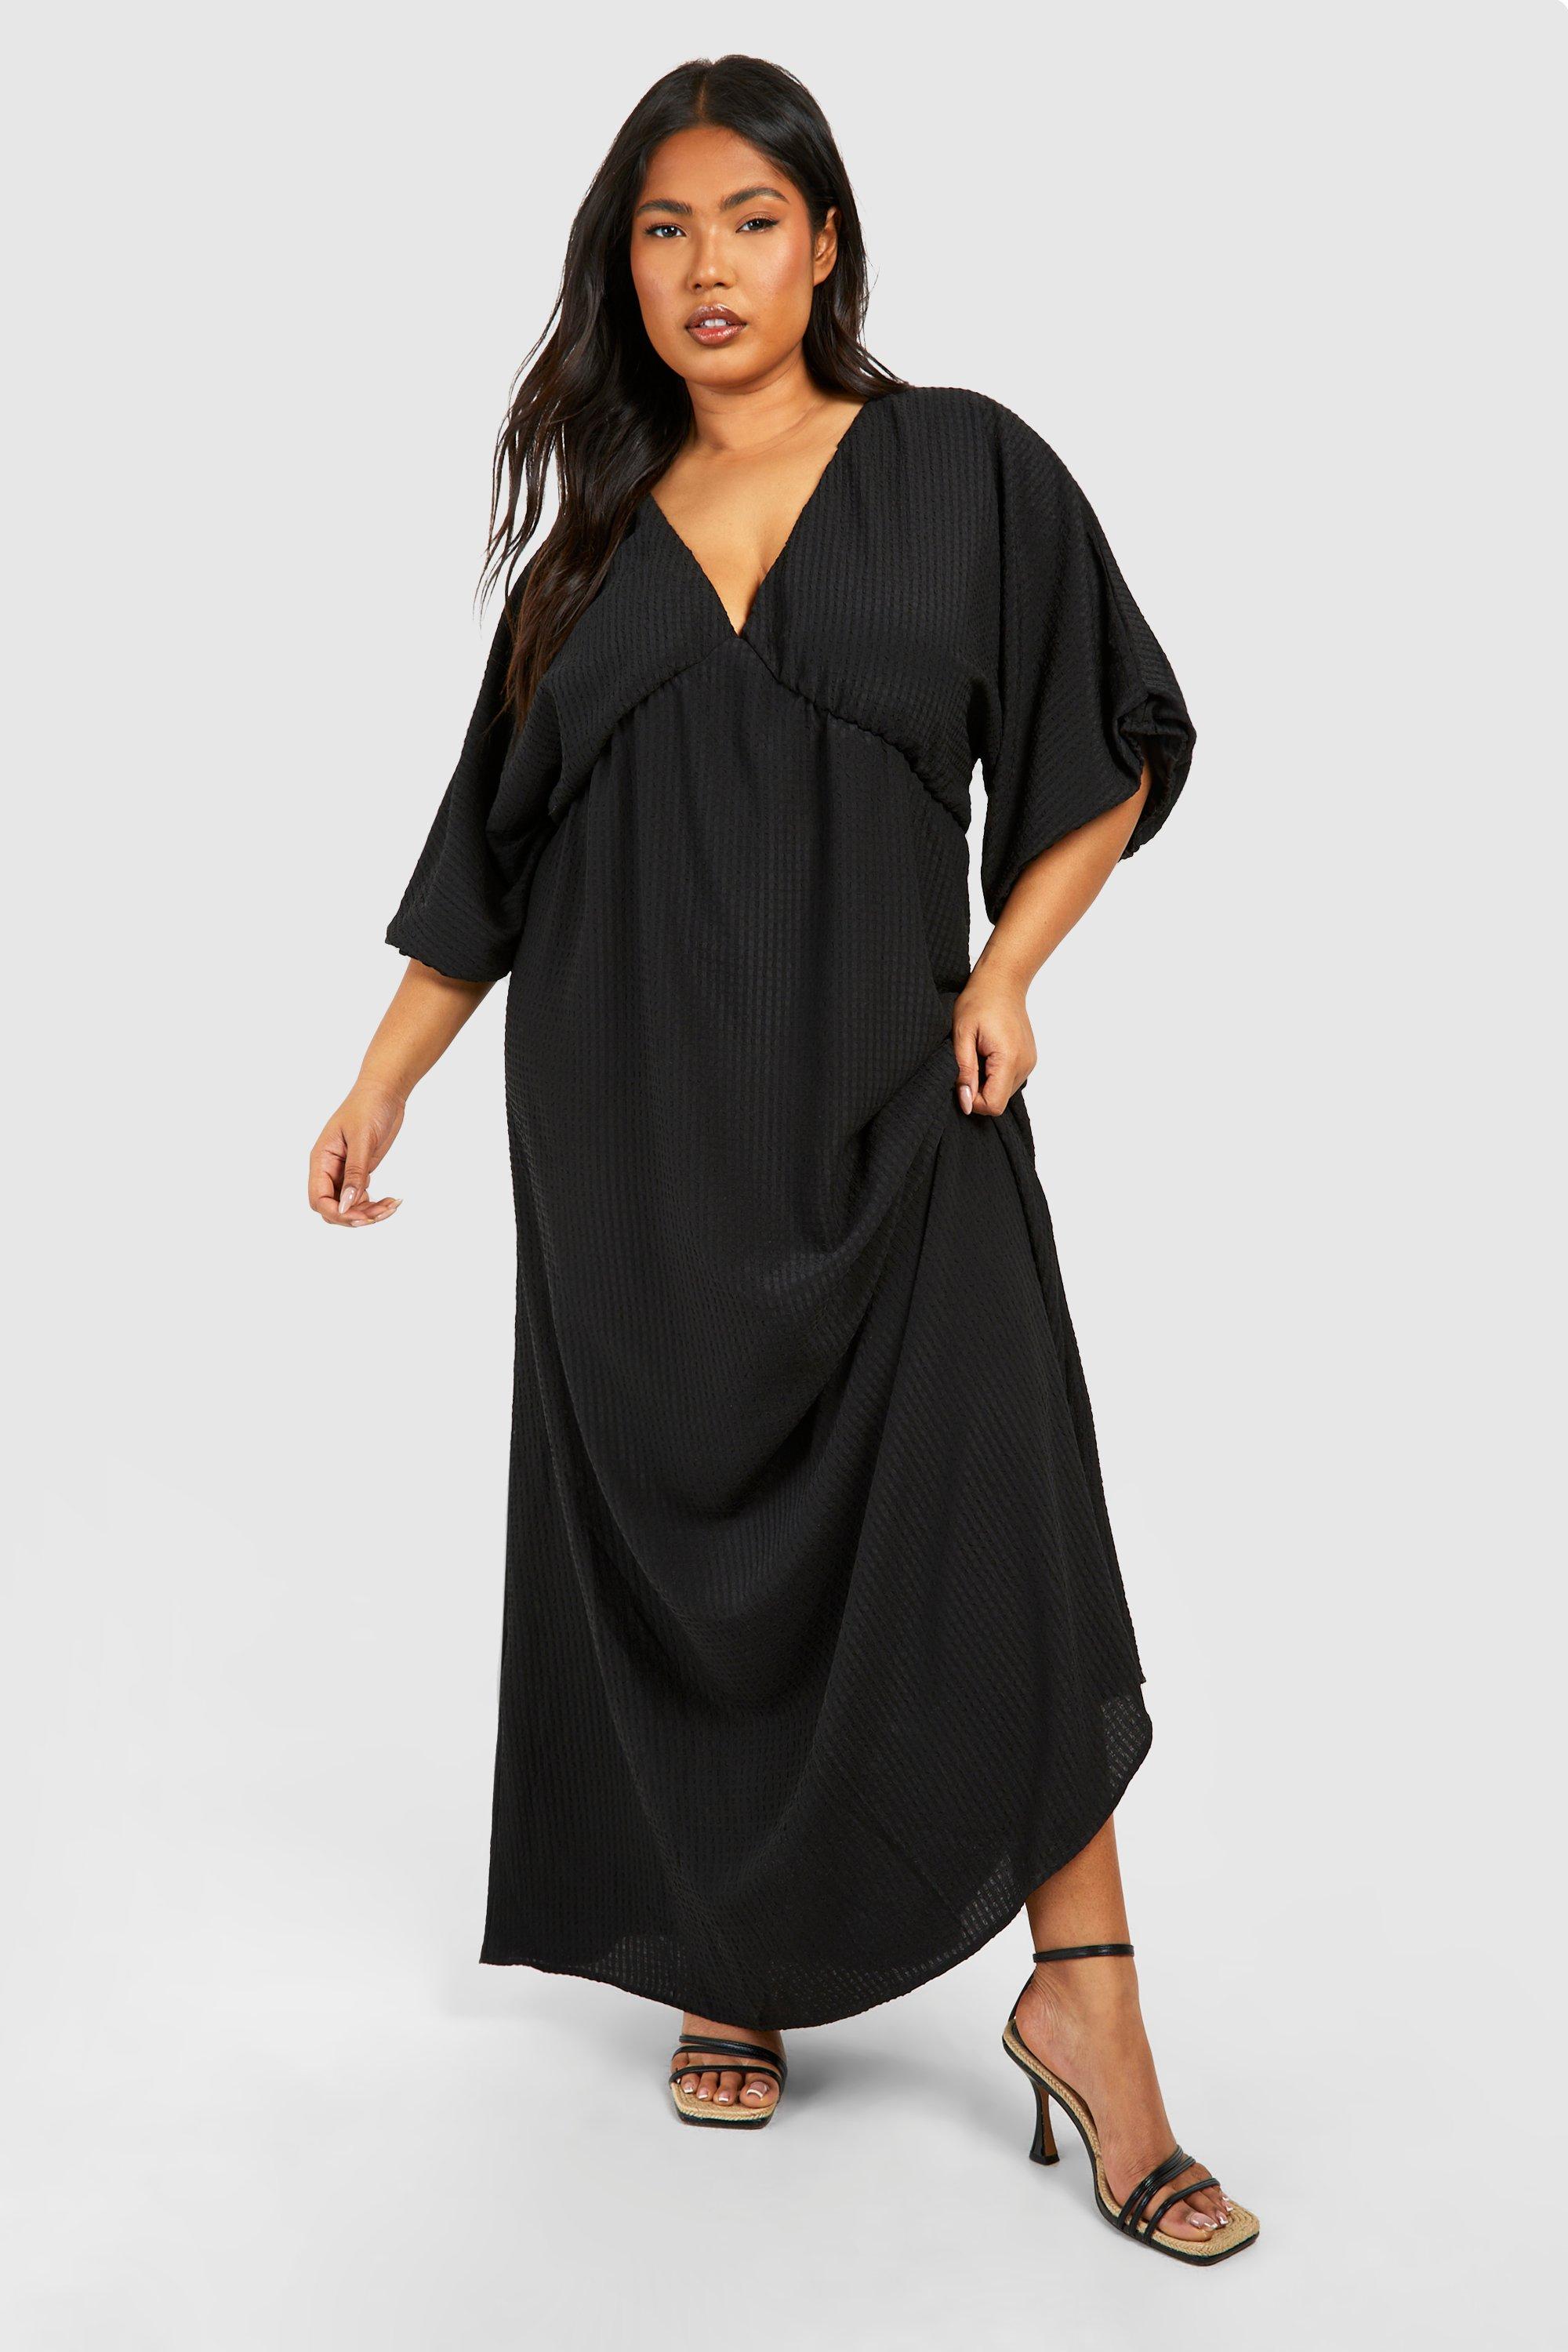 Buy Boohoo Midi Dresses in Saudi, UAE, Kuwait and Qatar